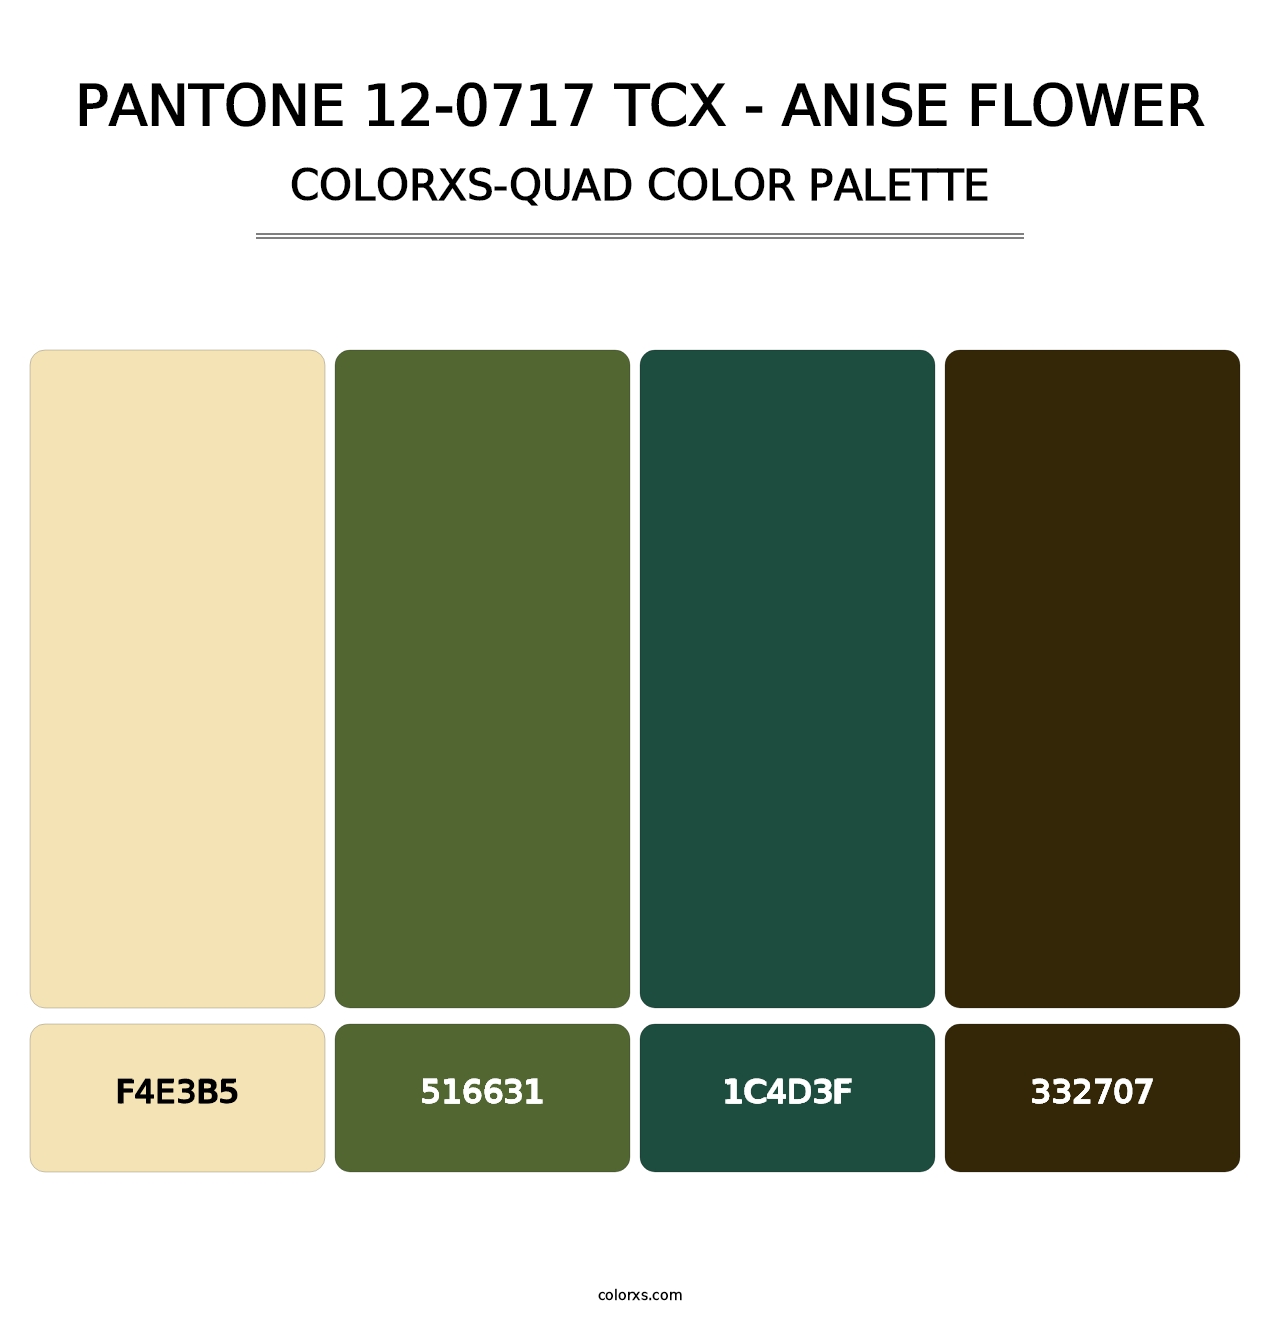 PANTONE 12-0717 TCX - Anise Flower - Colorxs Quad Palette